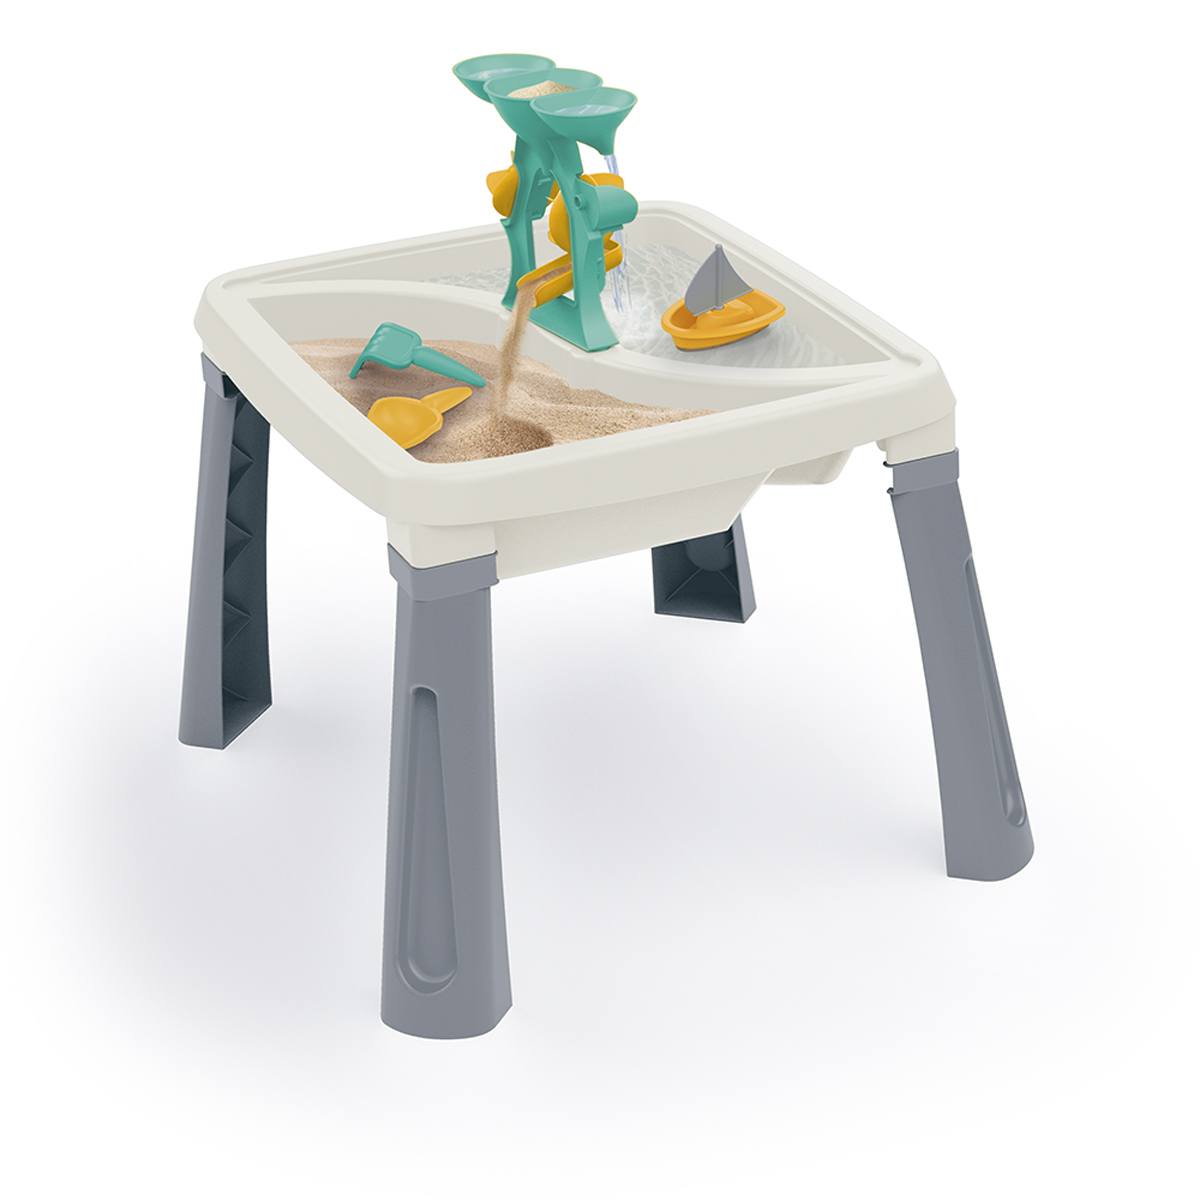 Песочница игровая Dolu 3в1 песок-вода-столик с аксессуарами